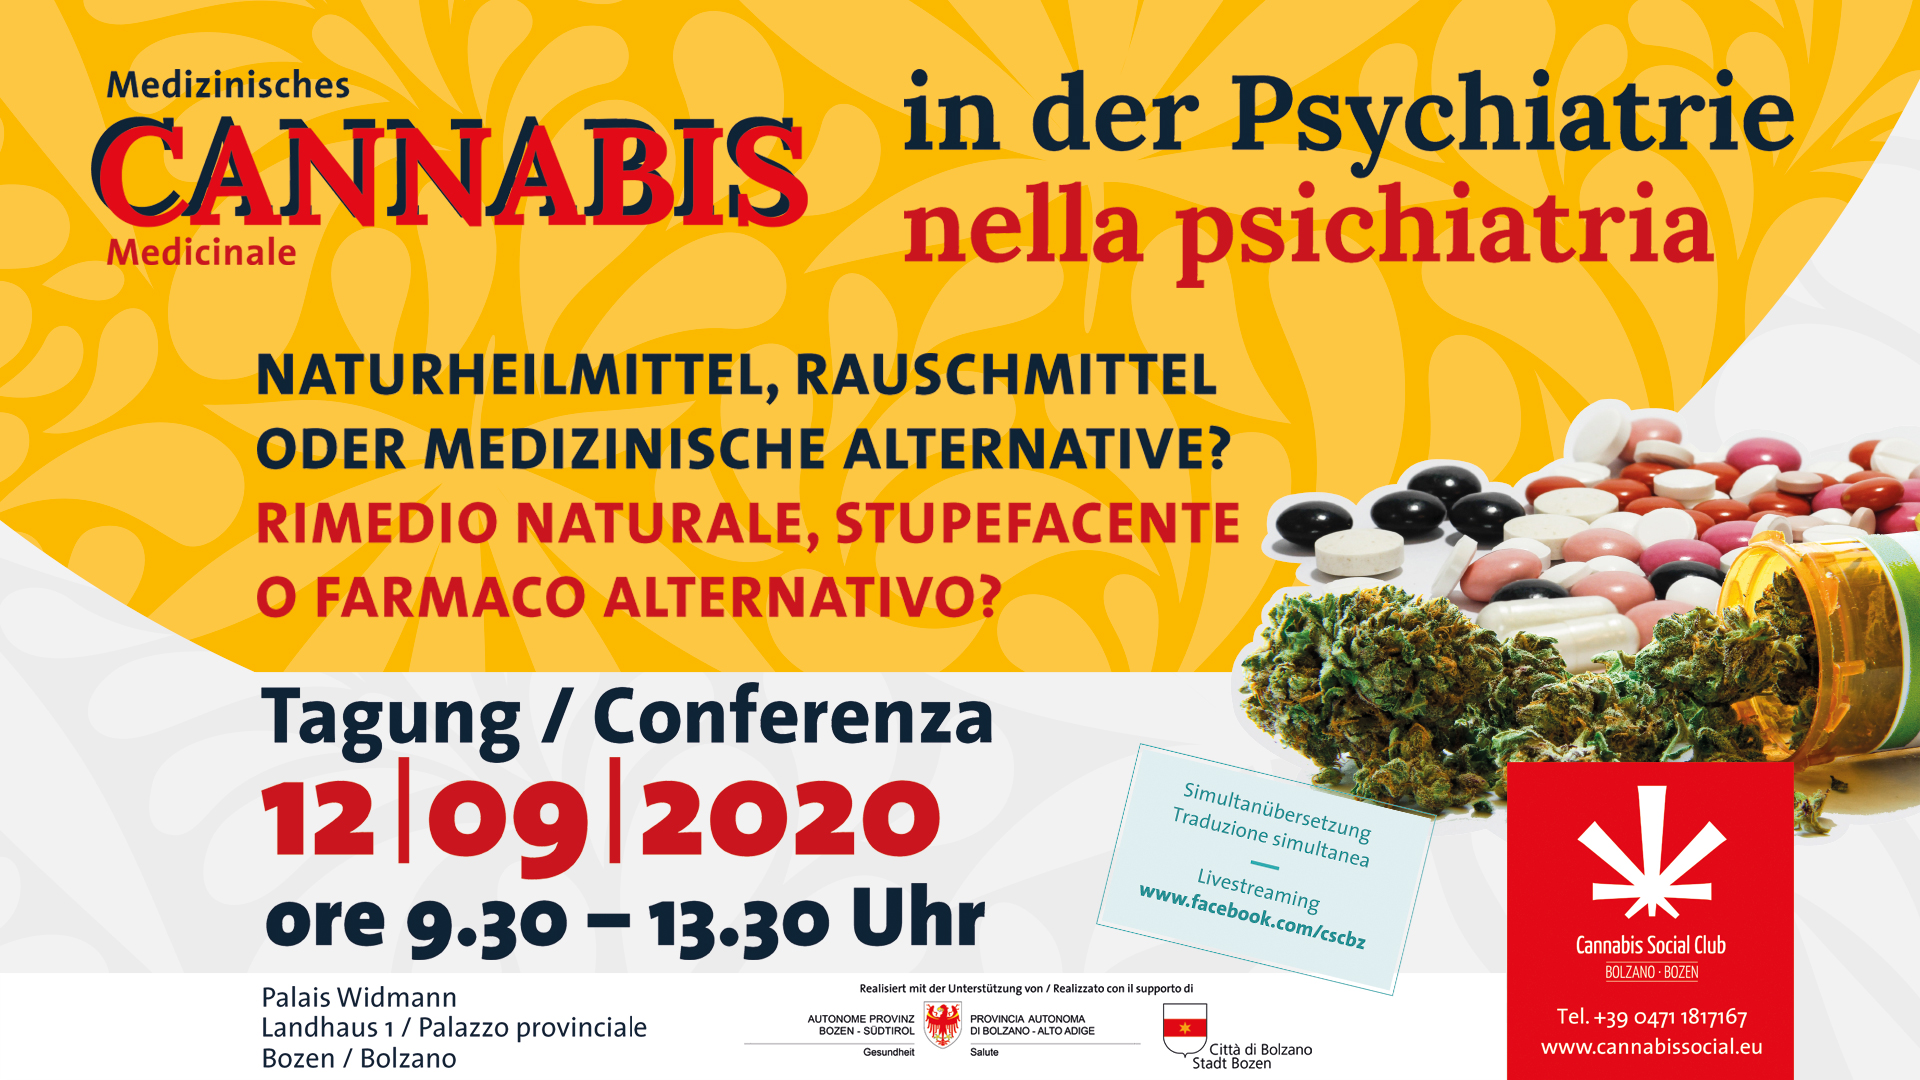 Medizinisches Cannabis in der Psychiatrie – Naturheilmittel, Rauschmittel oder medizinische Alternative?